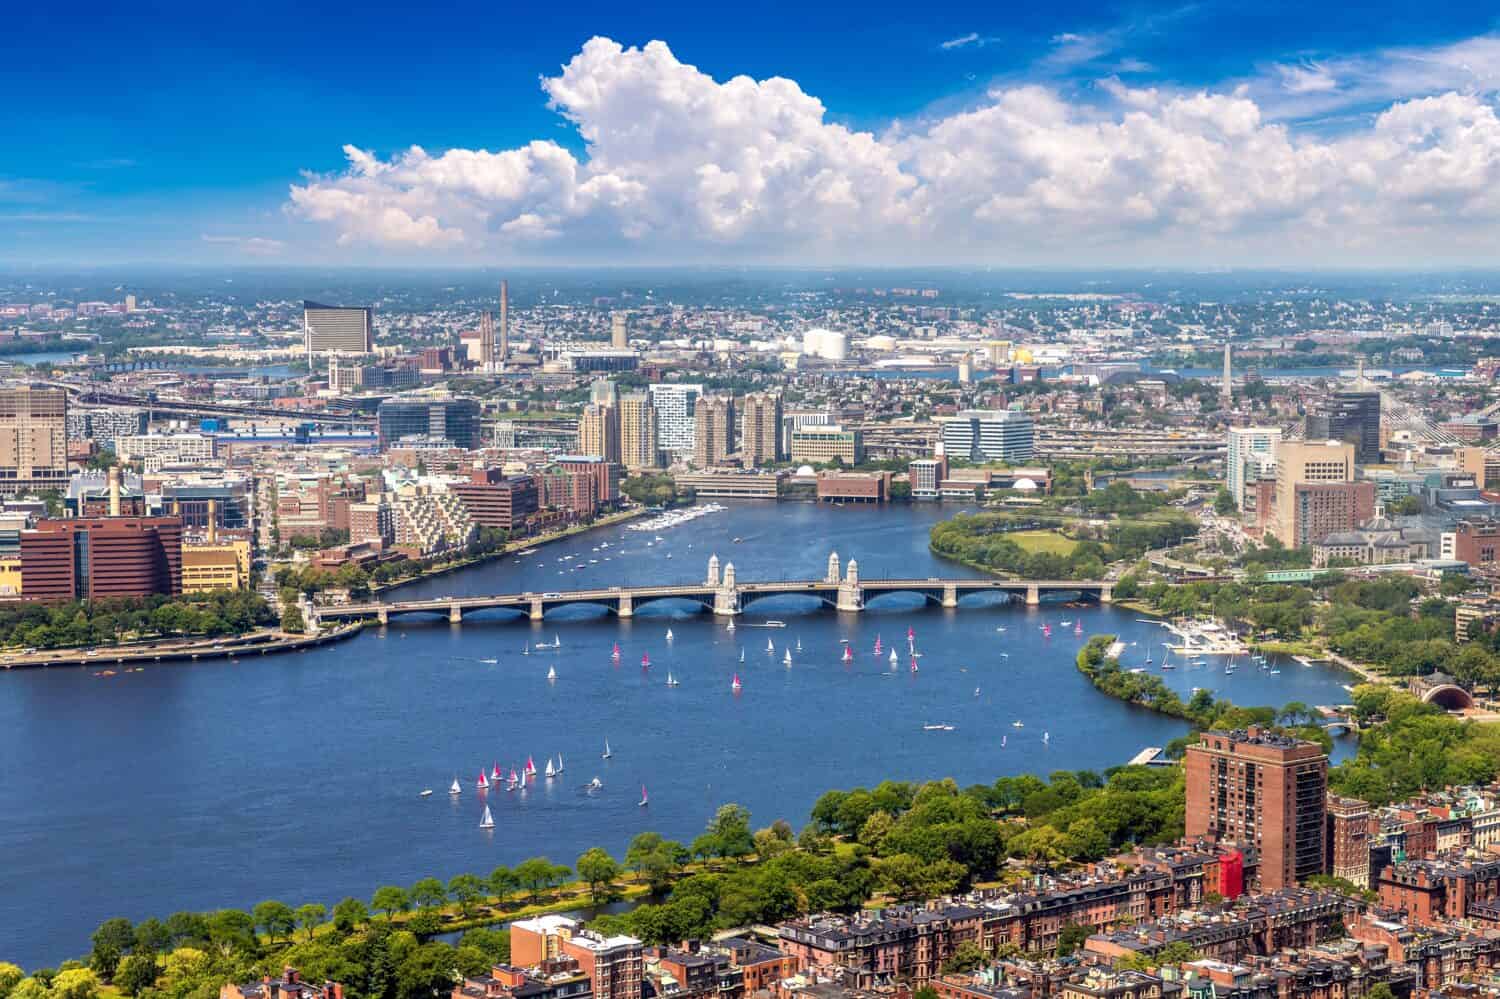 Panoramic aerial view of Boston, Massachusetts, USA